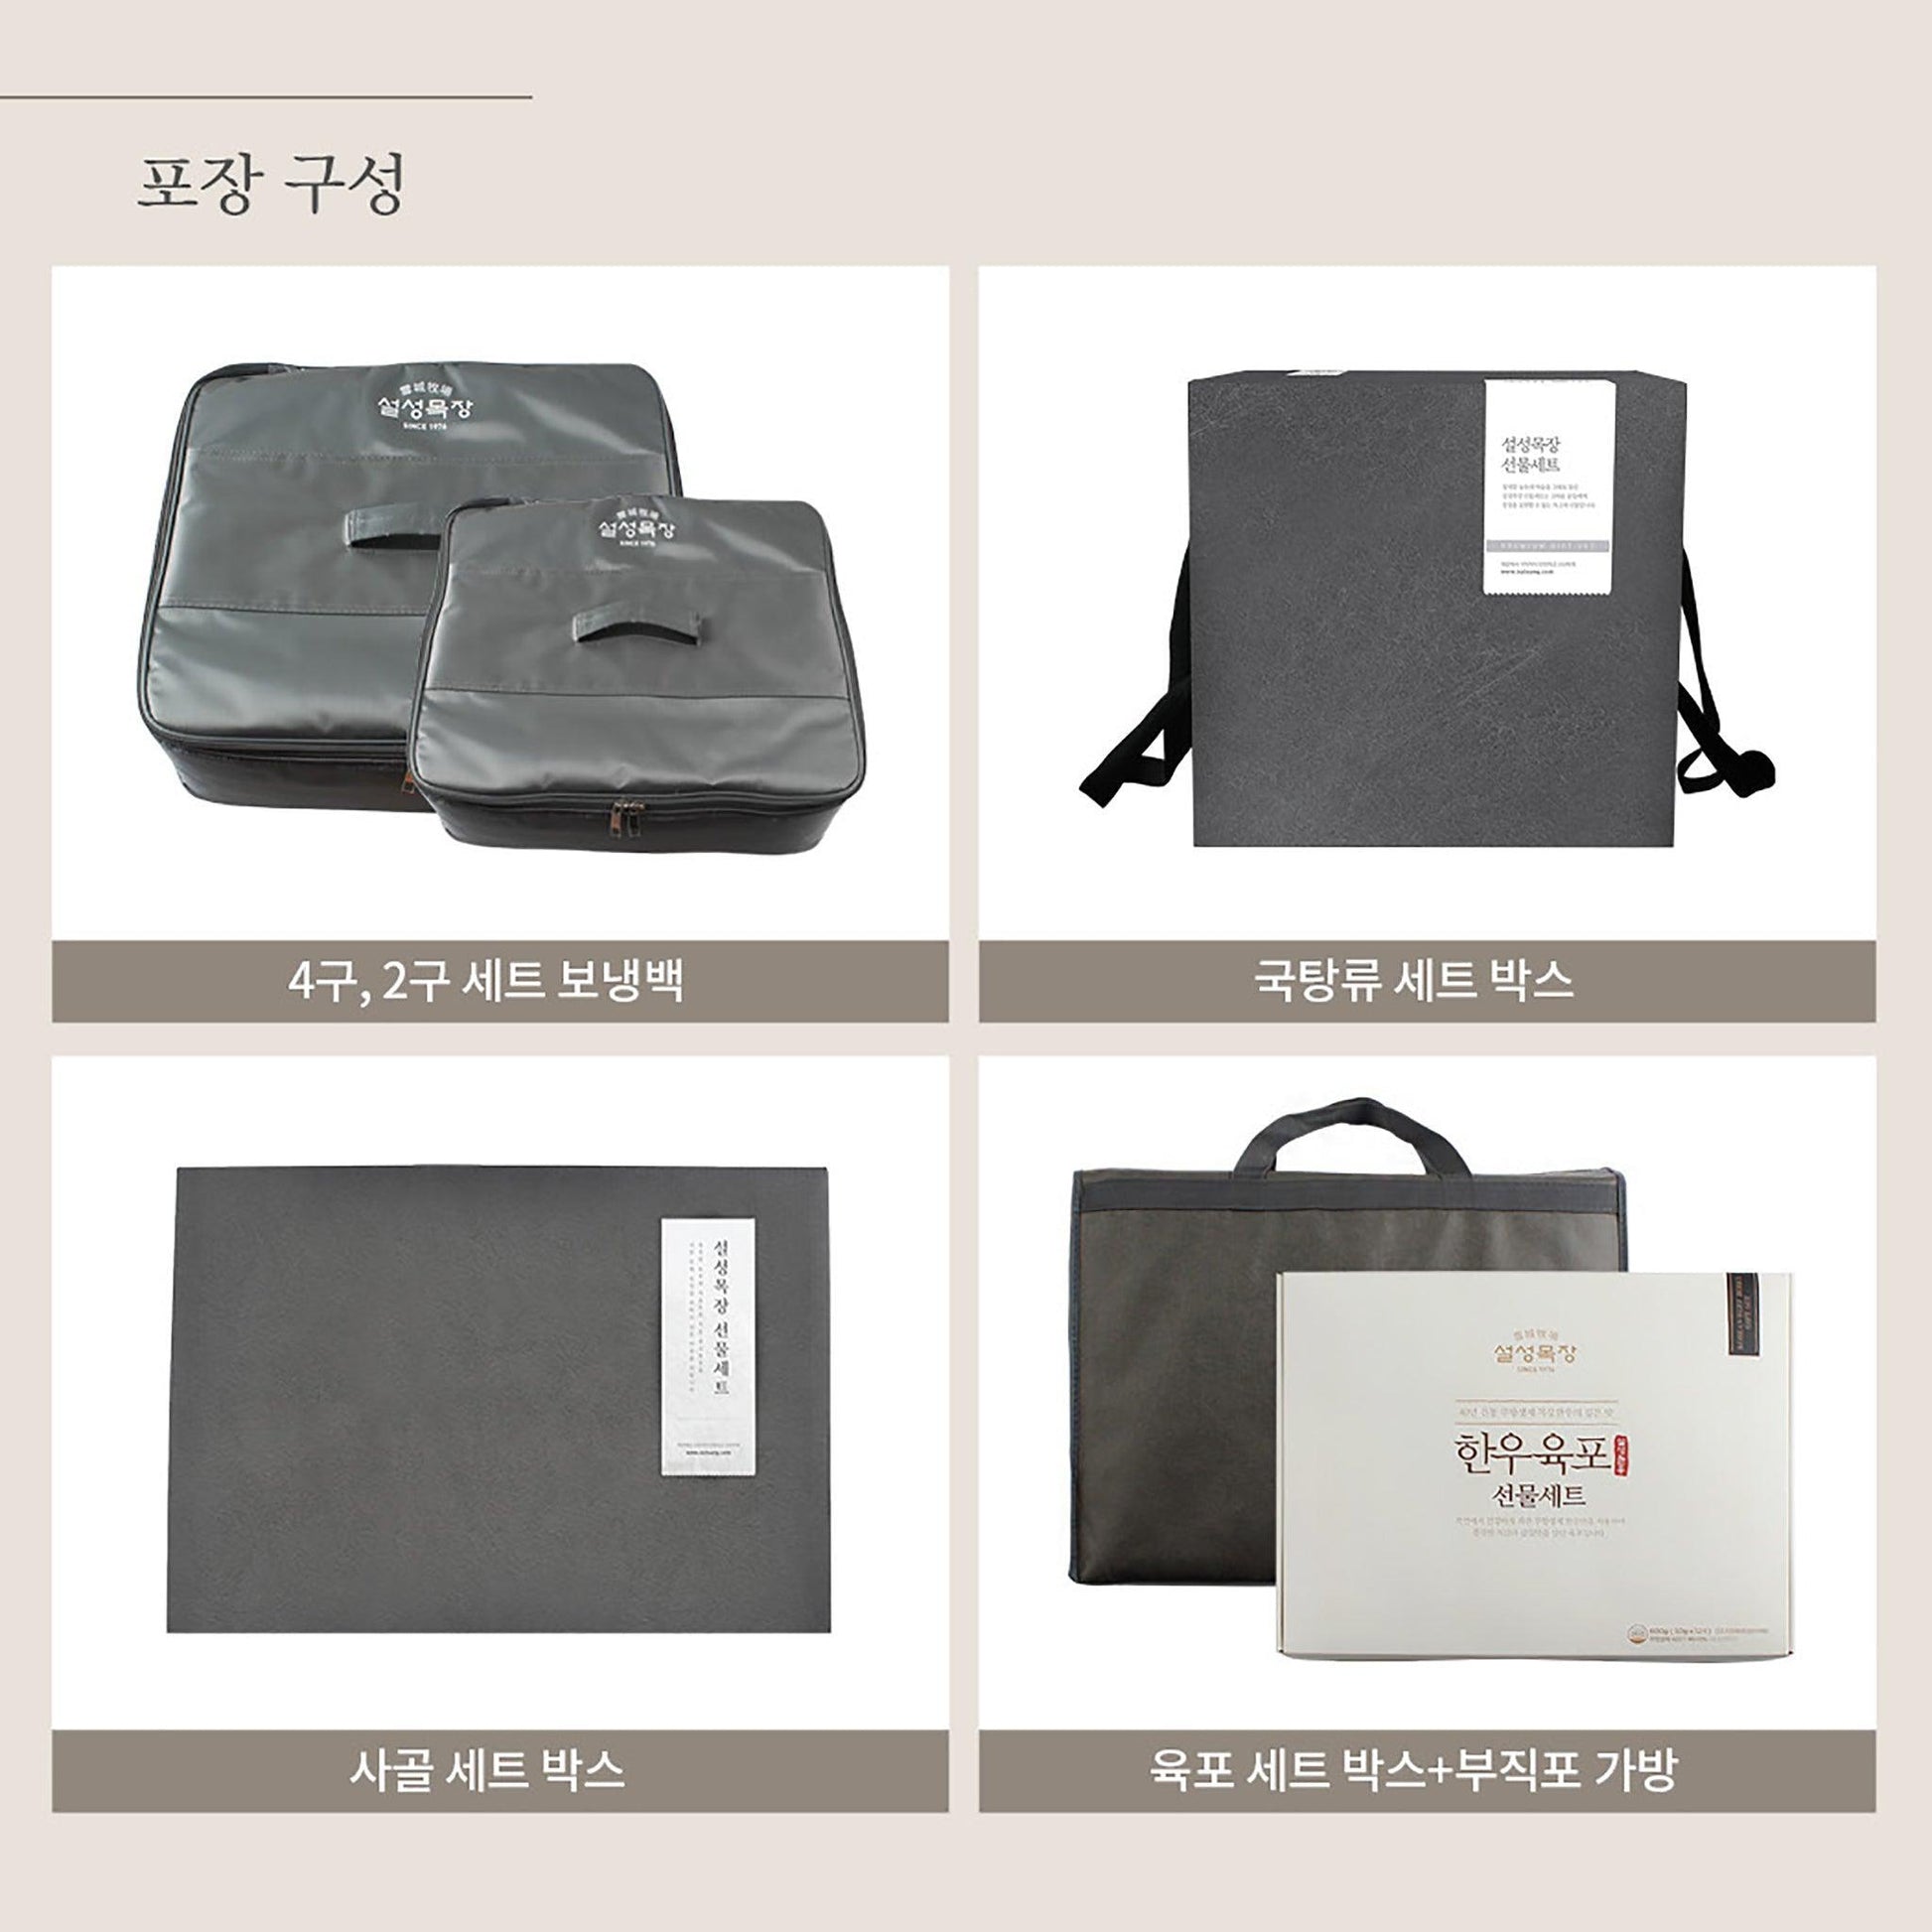 설성목장 명품 얼갈이국 세트 (Delivery Available Only in Korea) - Kim'C Market